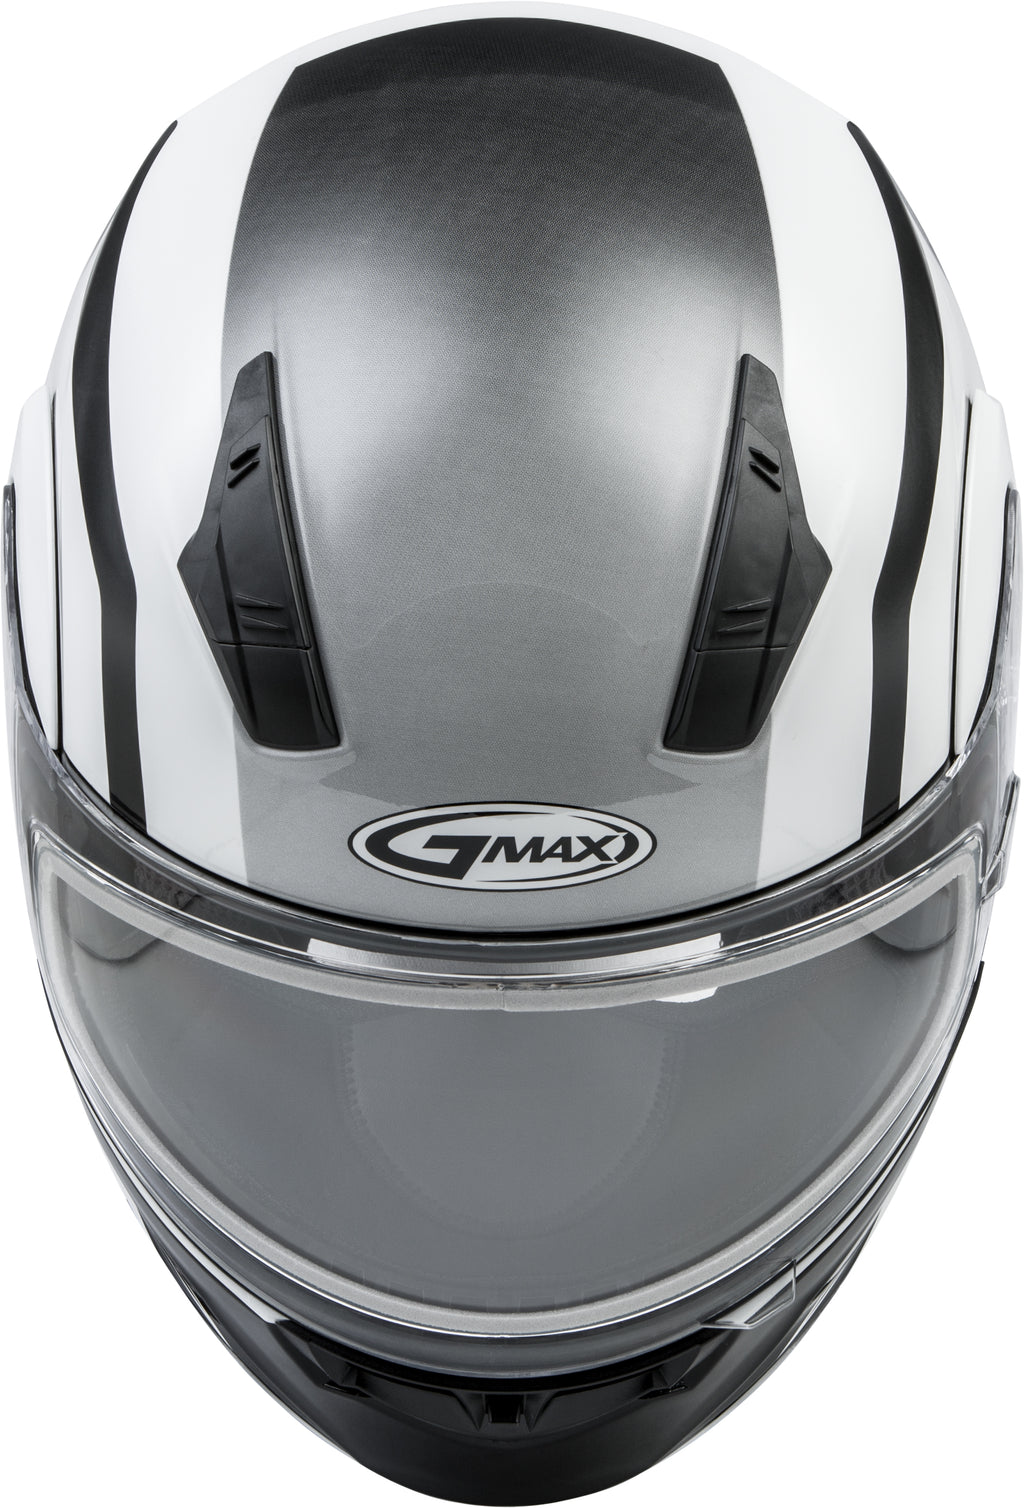 Md 04s Modular Docket Snow Helmet White/Black 3x